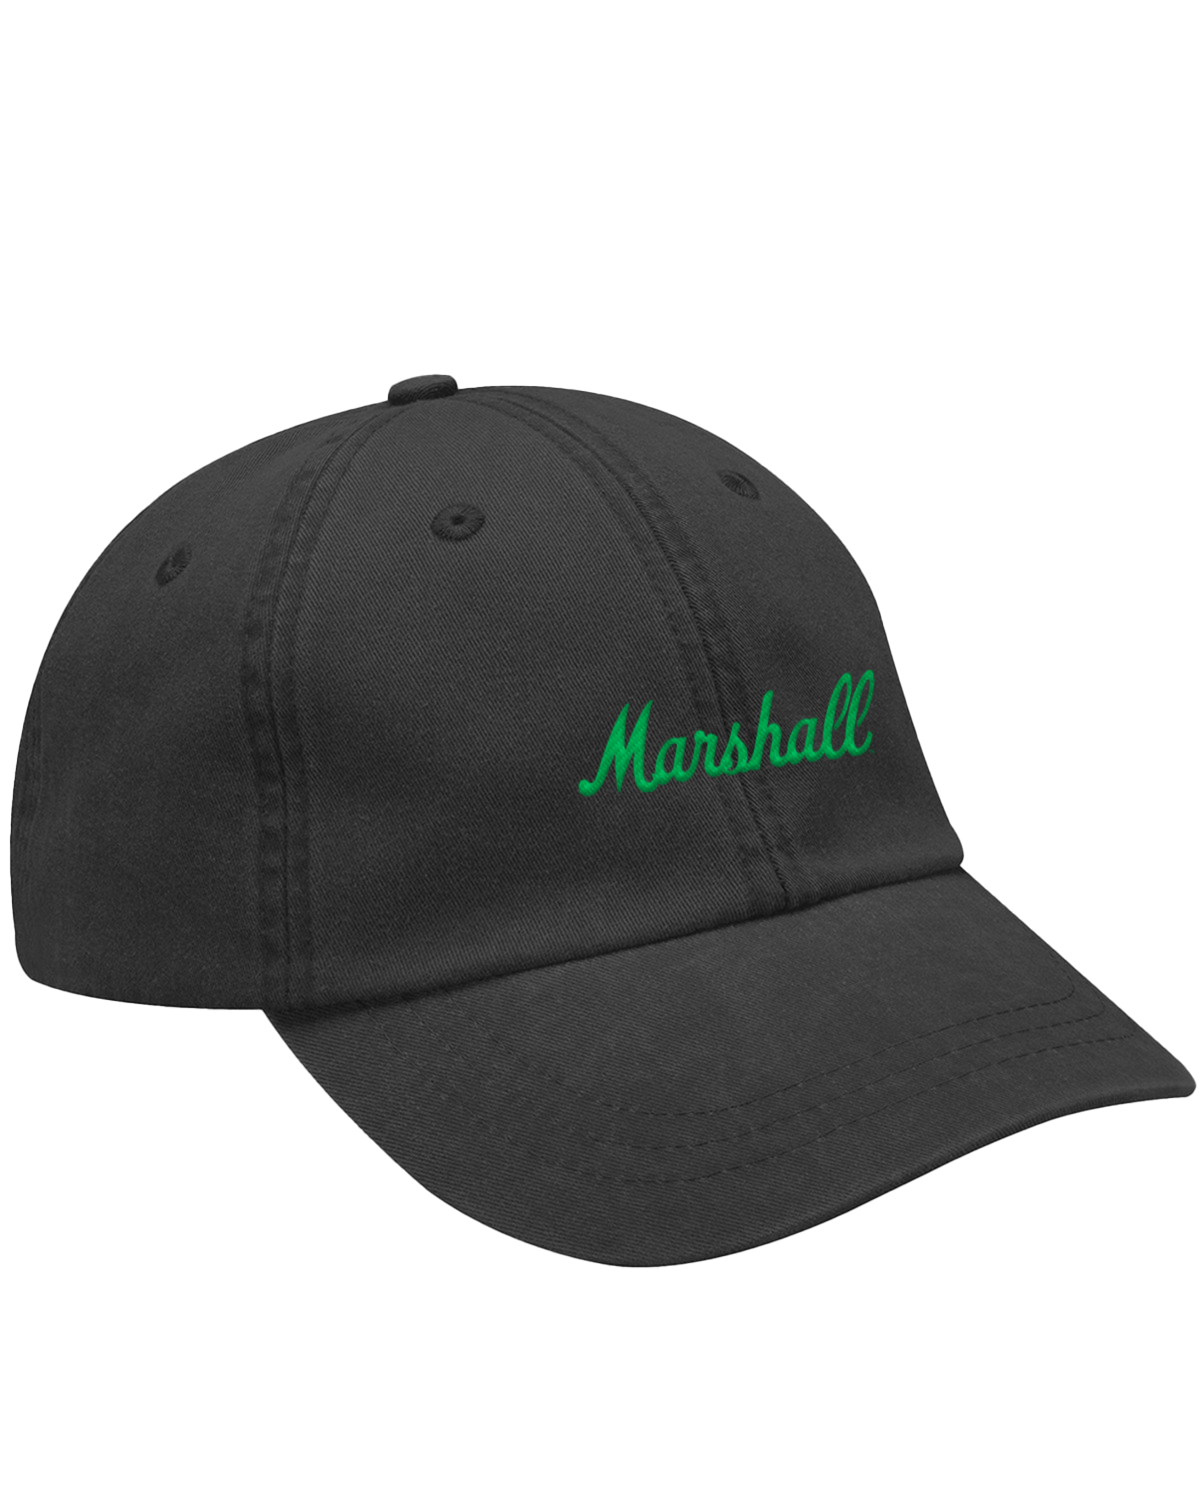 Marshall Hat